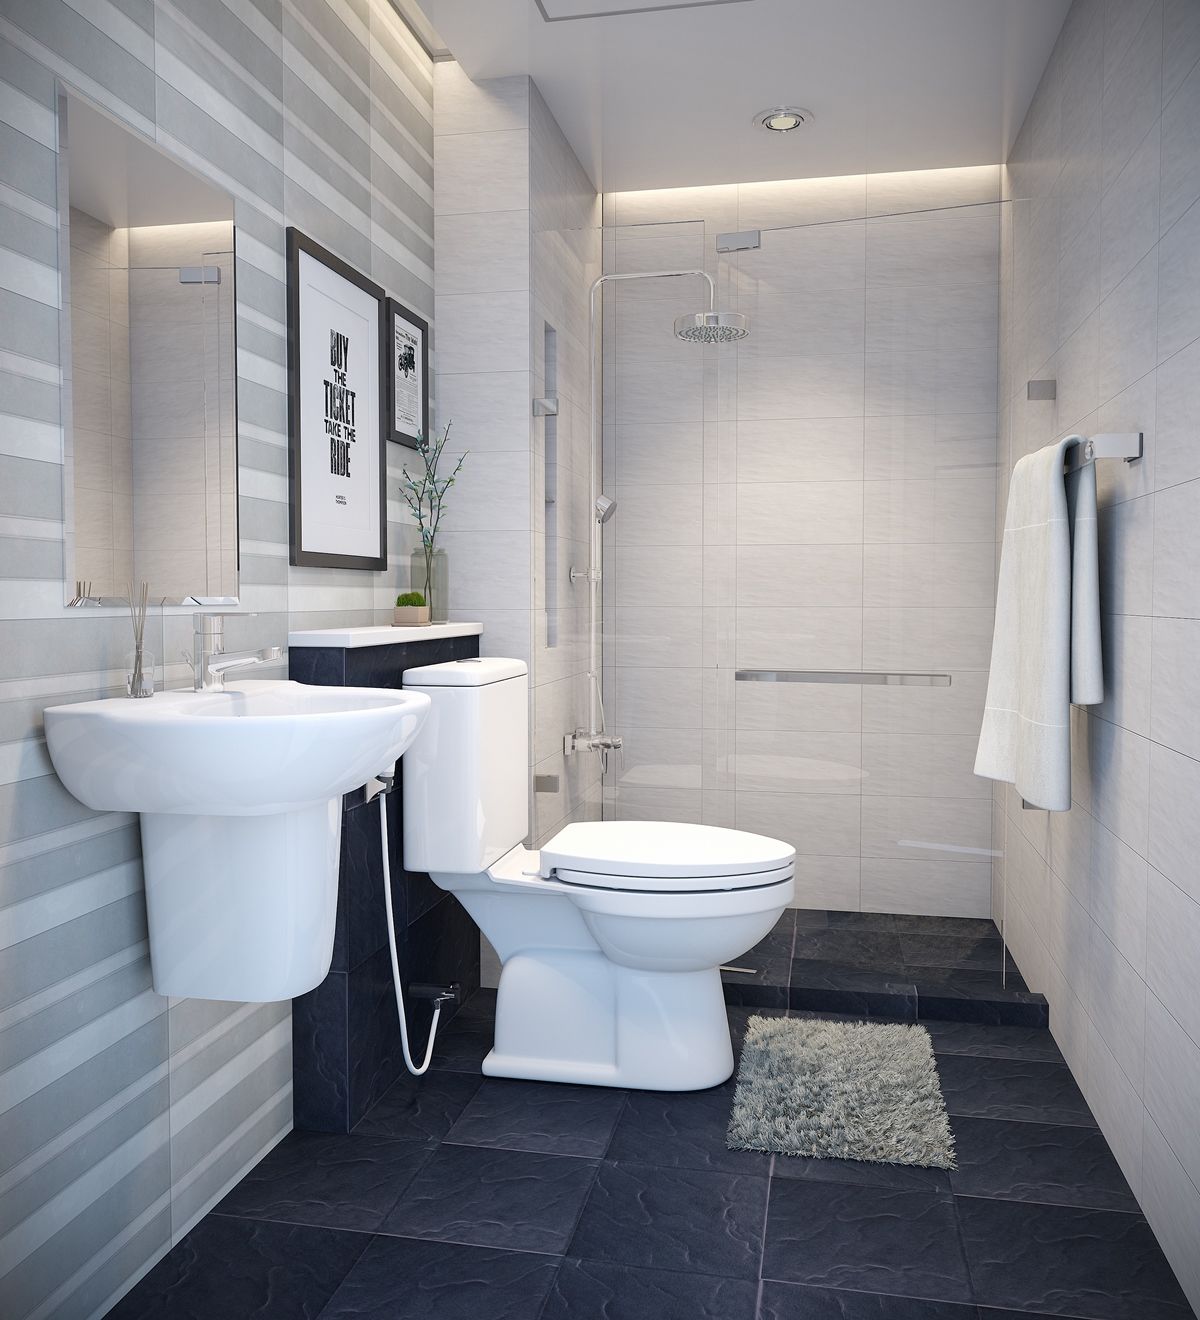 Khám phá ngay phòng toilet tiện nghi, sạch sẽ và được bố trí hợp lý với không gian mở rộng, mang đến cảm giác thoải mái và tươi mới.